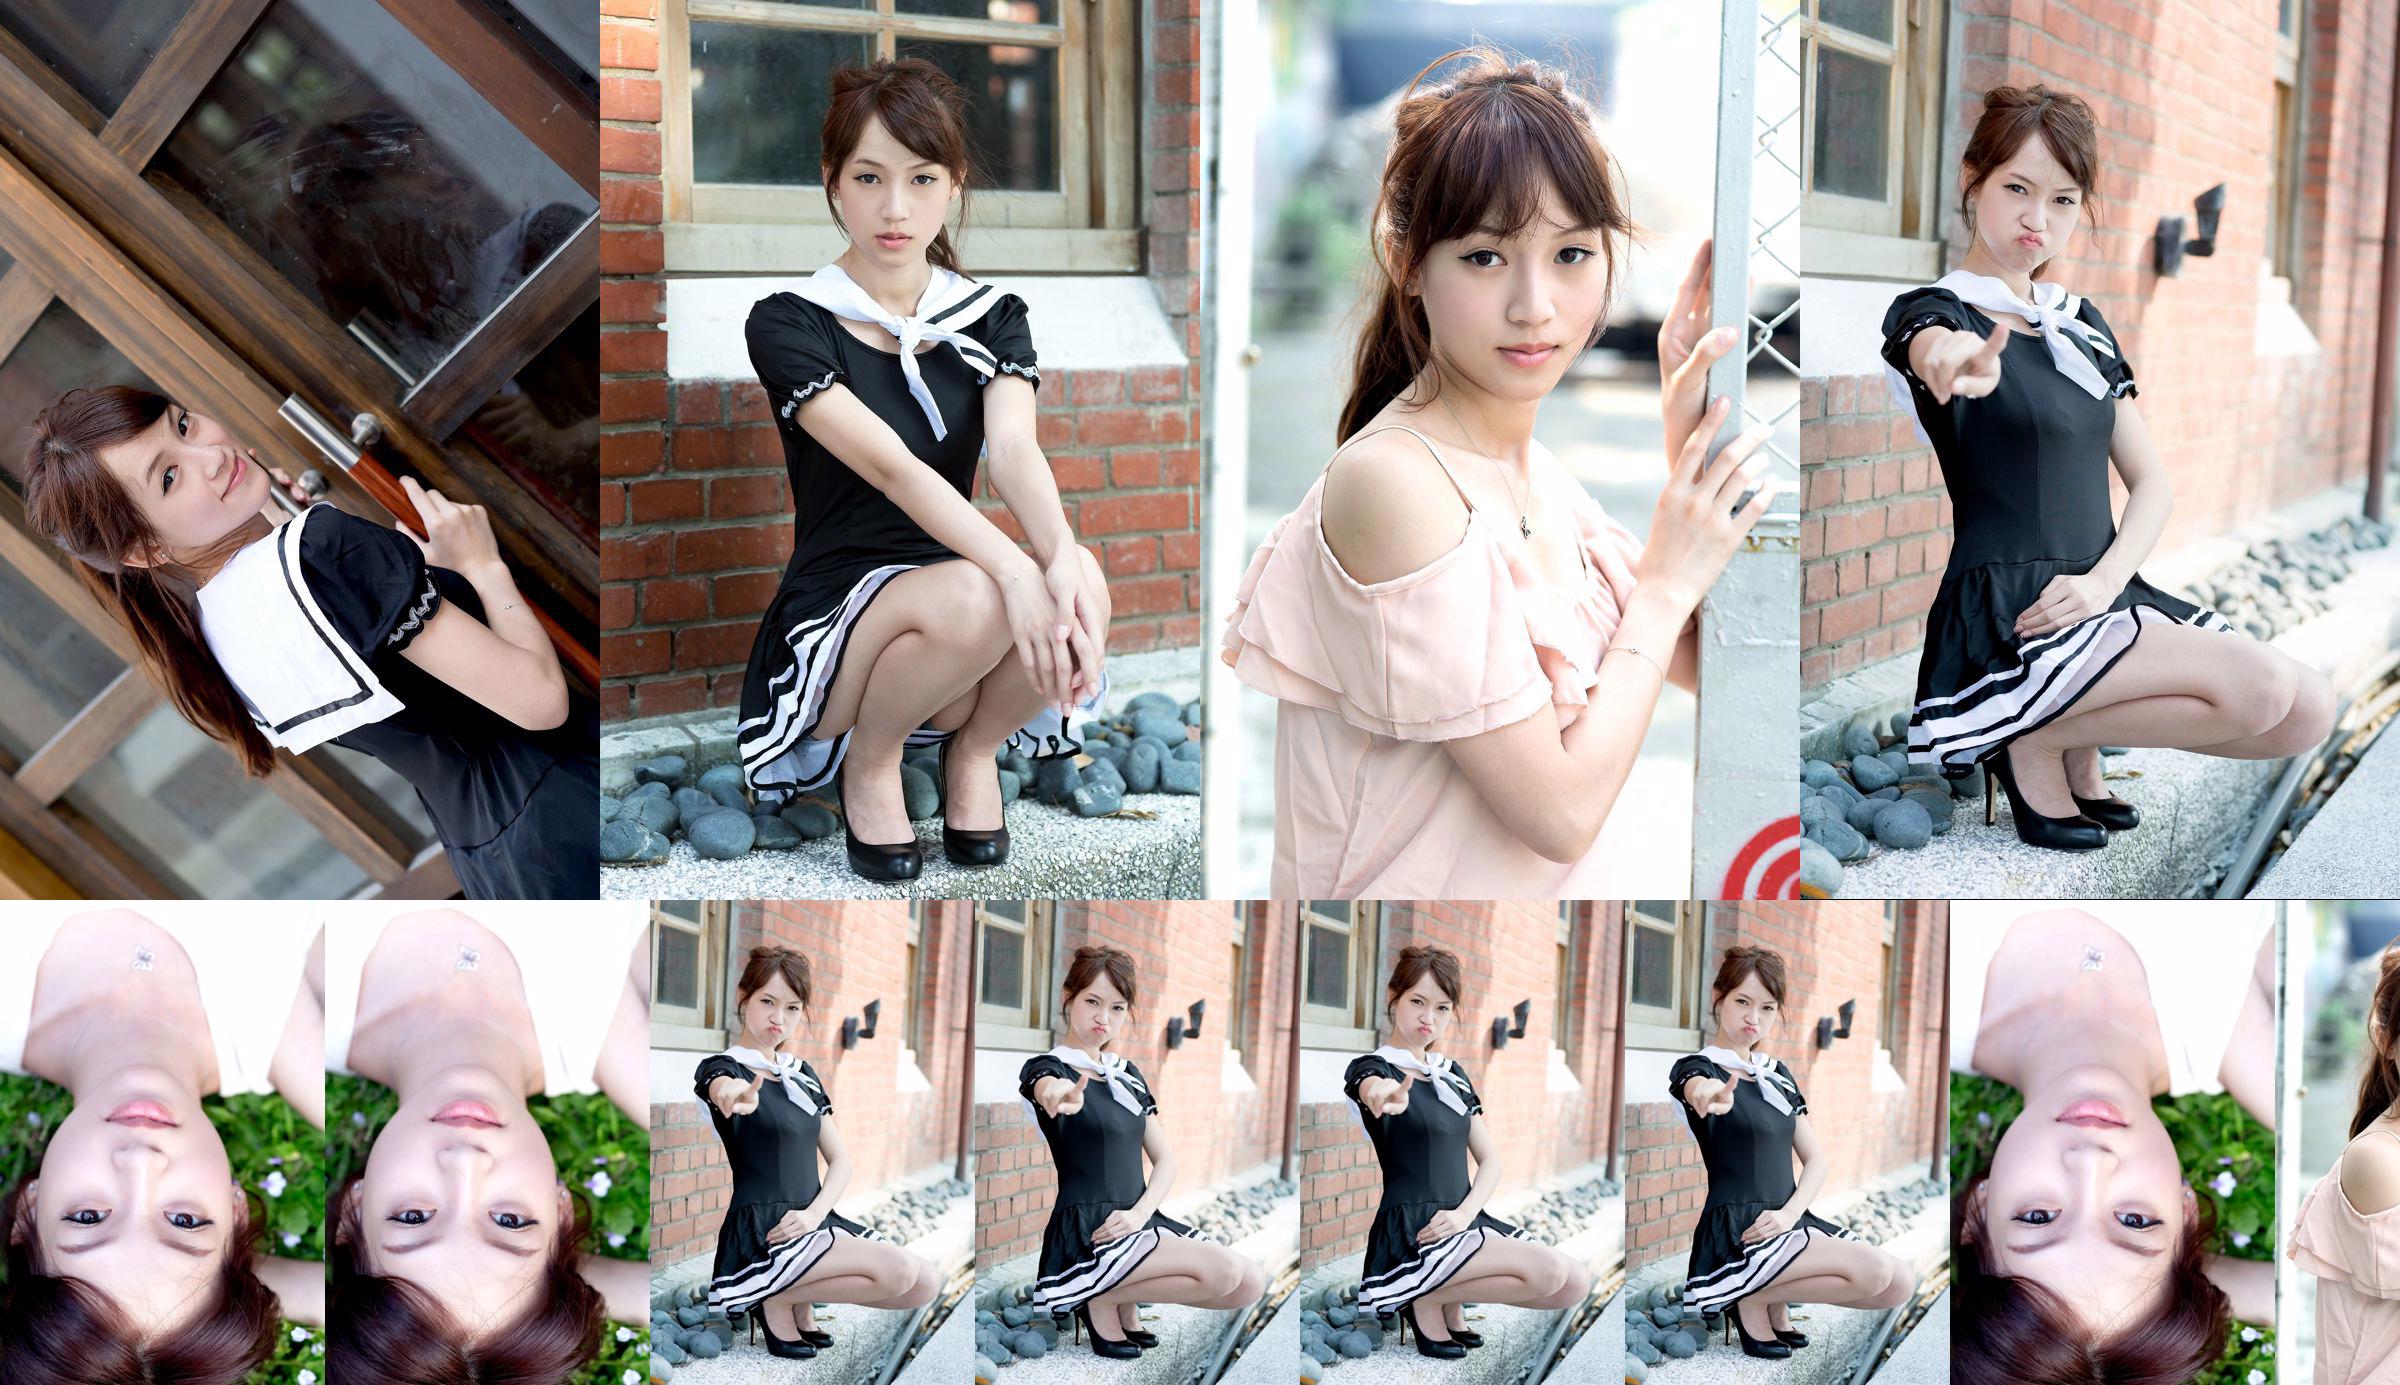 Taiwan model Ariel "Pure and Cute Outdoor Shots" No.eda4de Page 1